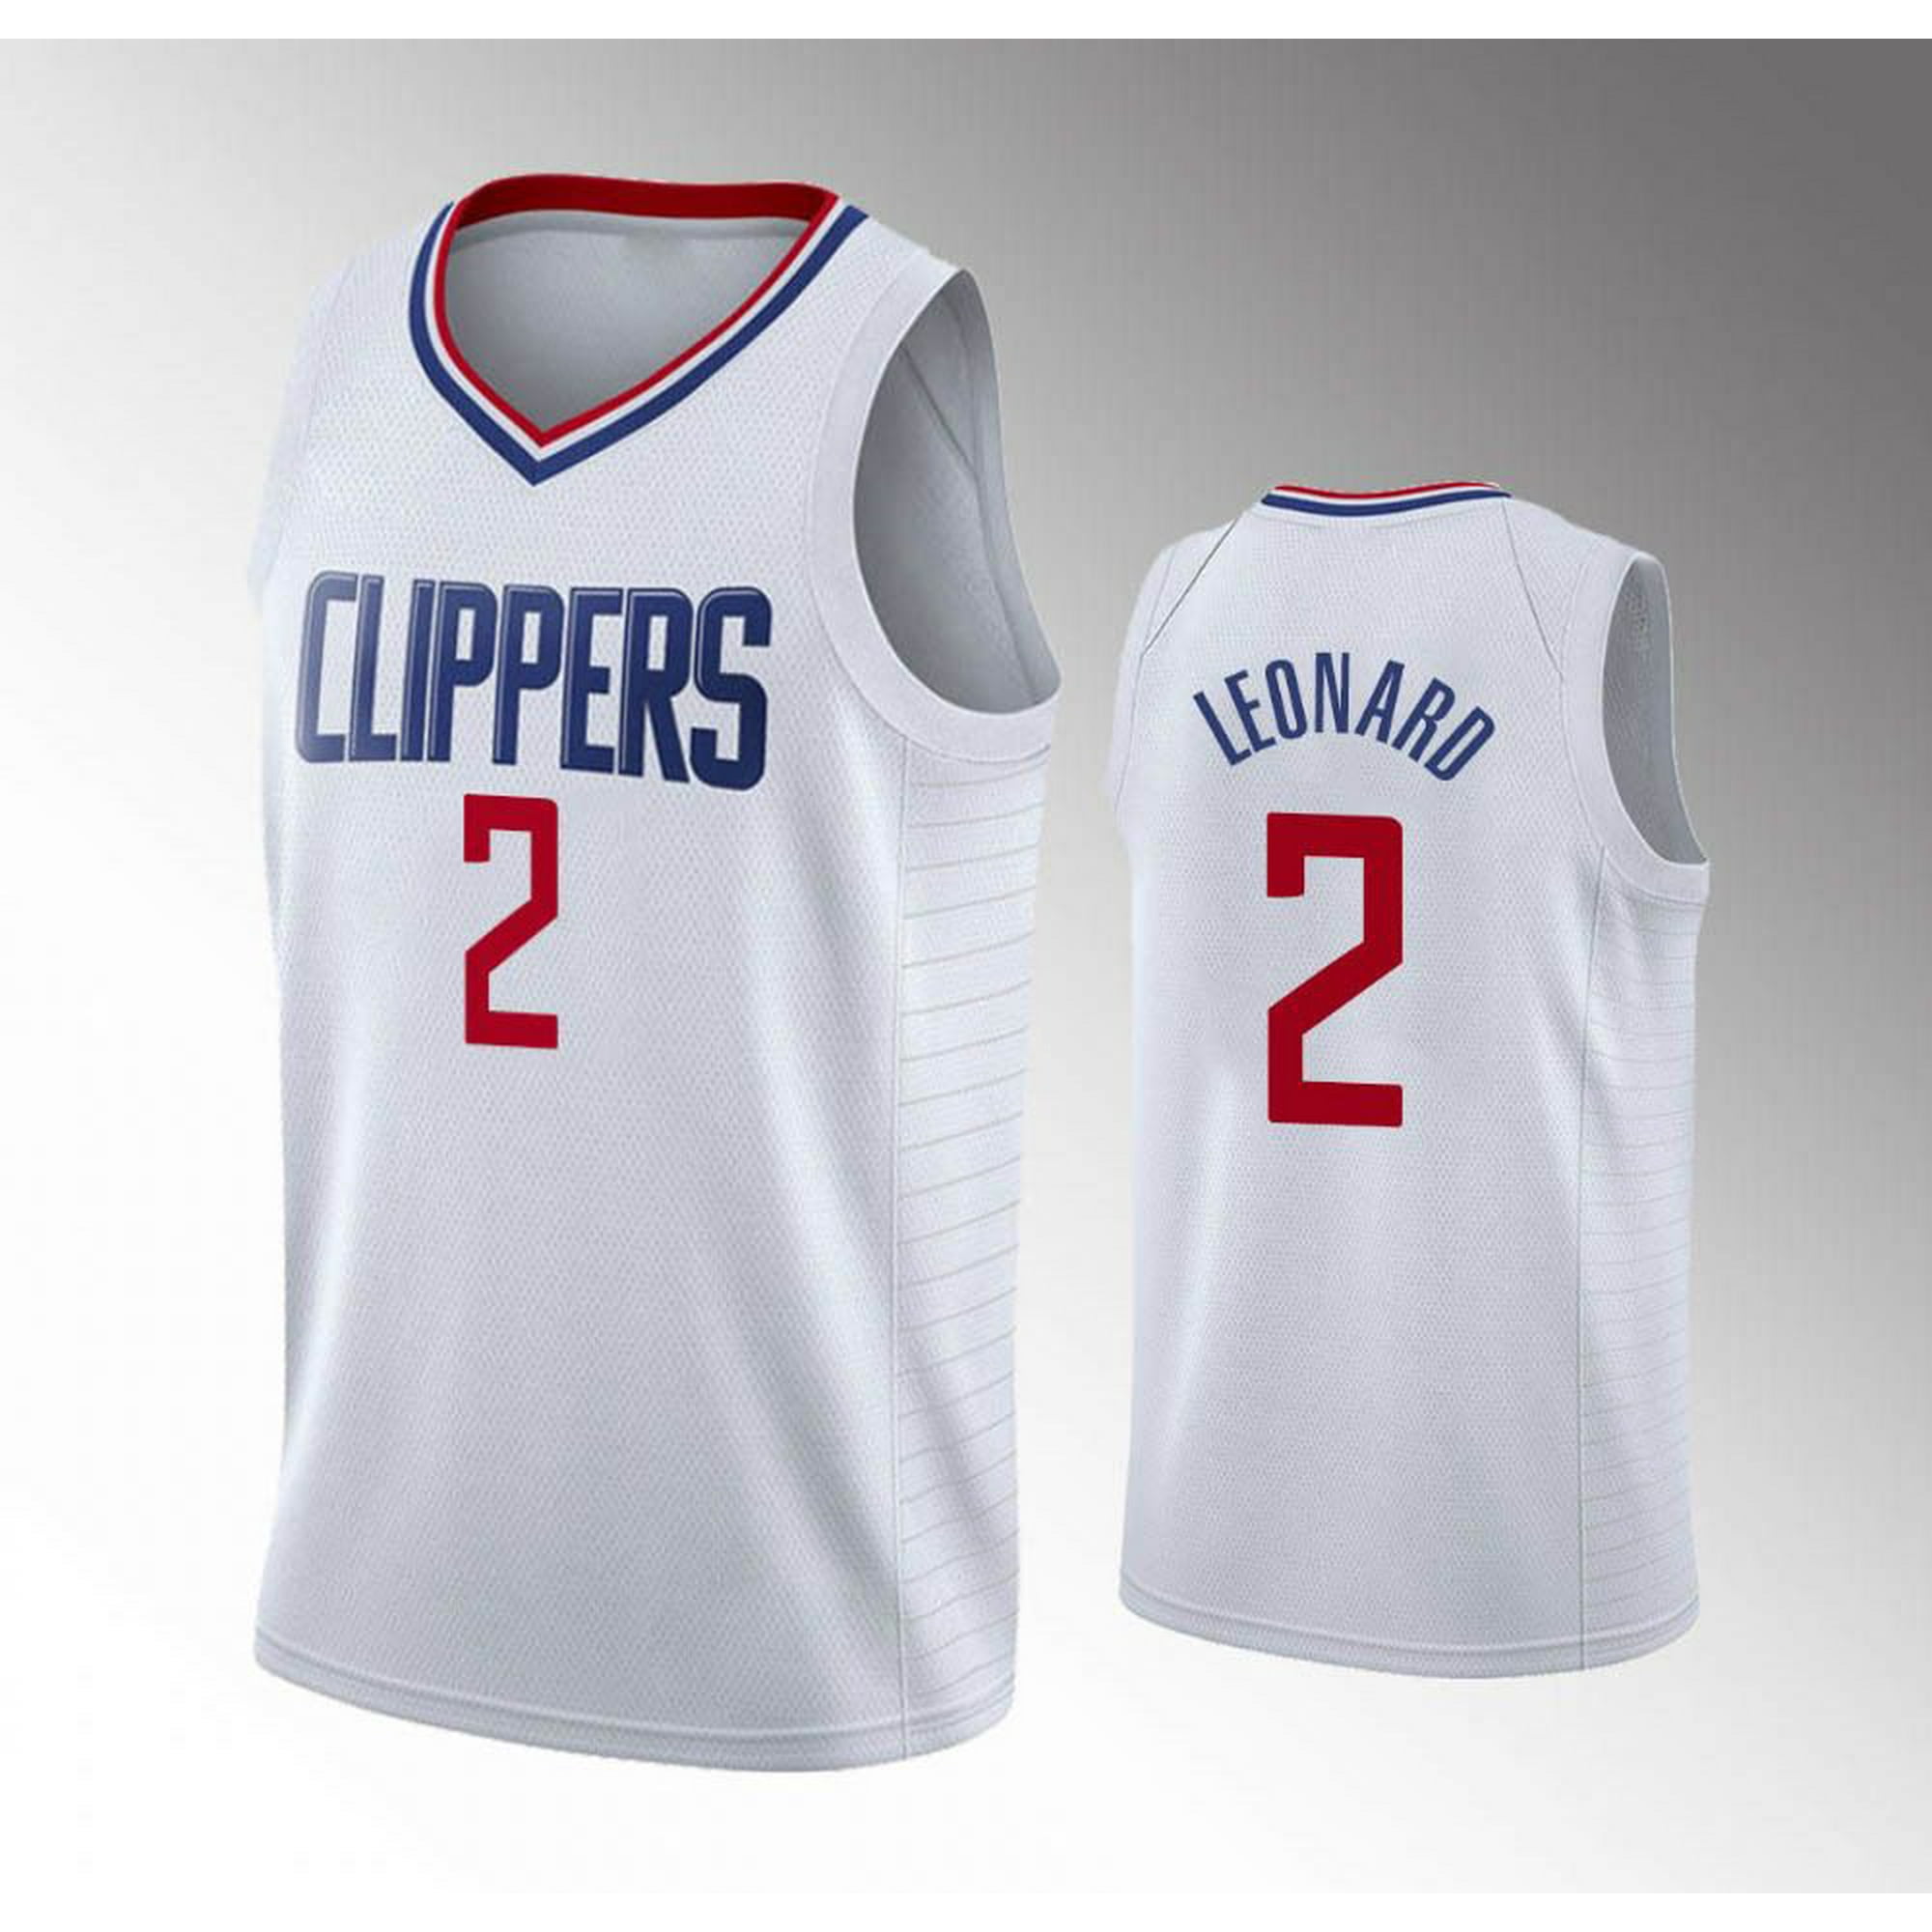 Kawhi Leonard Jerseys, Kawhi Clippers Jersey, NBA Kawhi Leonard Gear